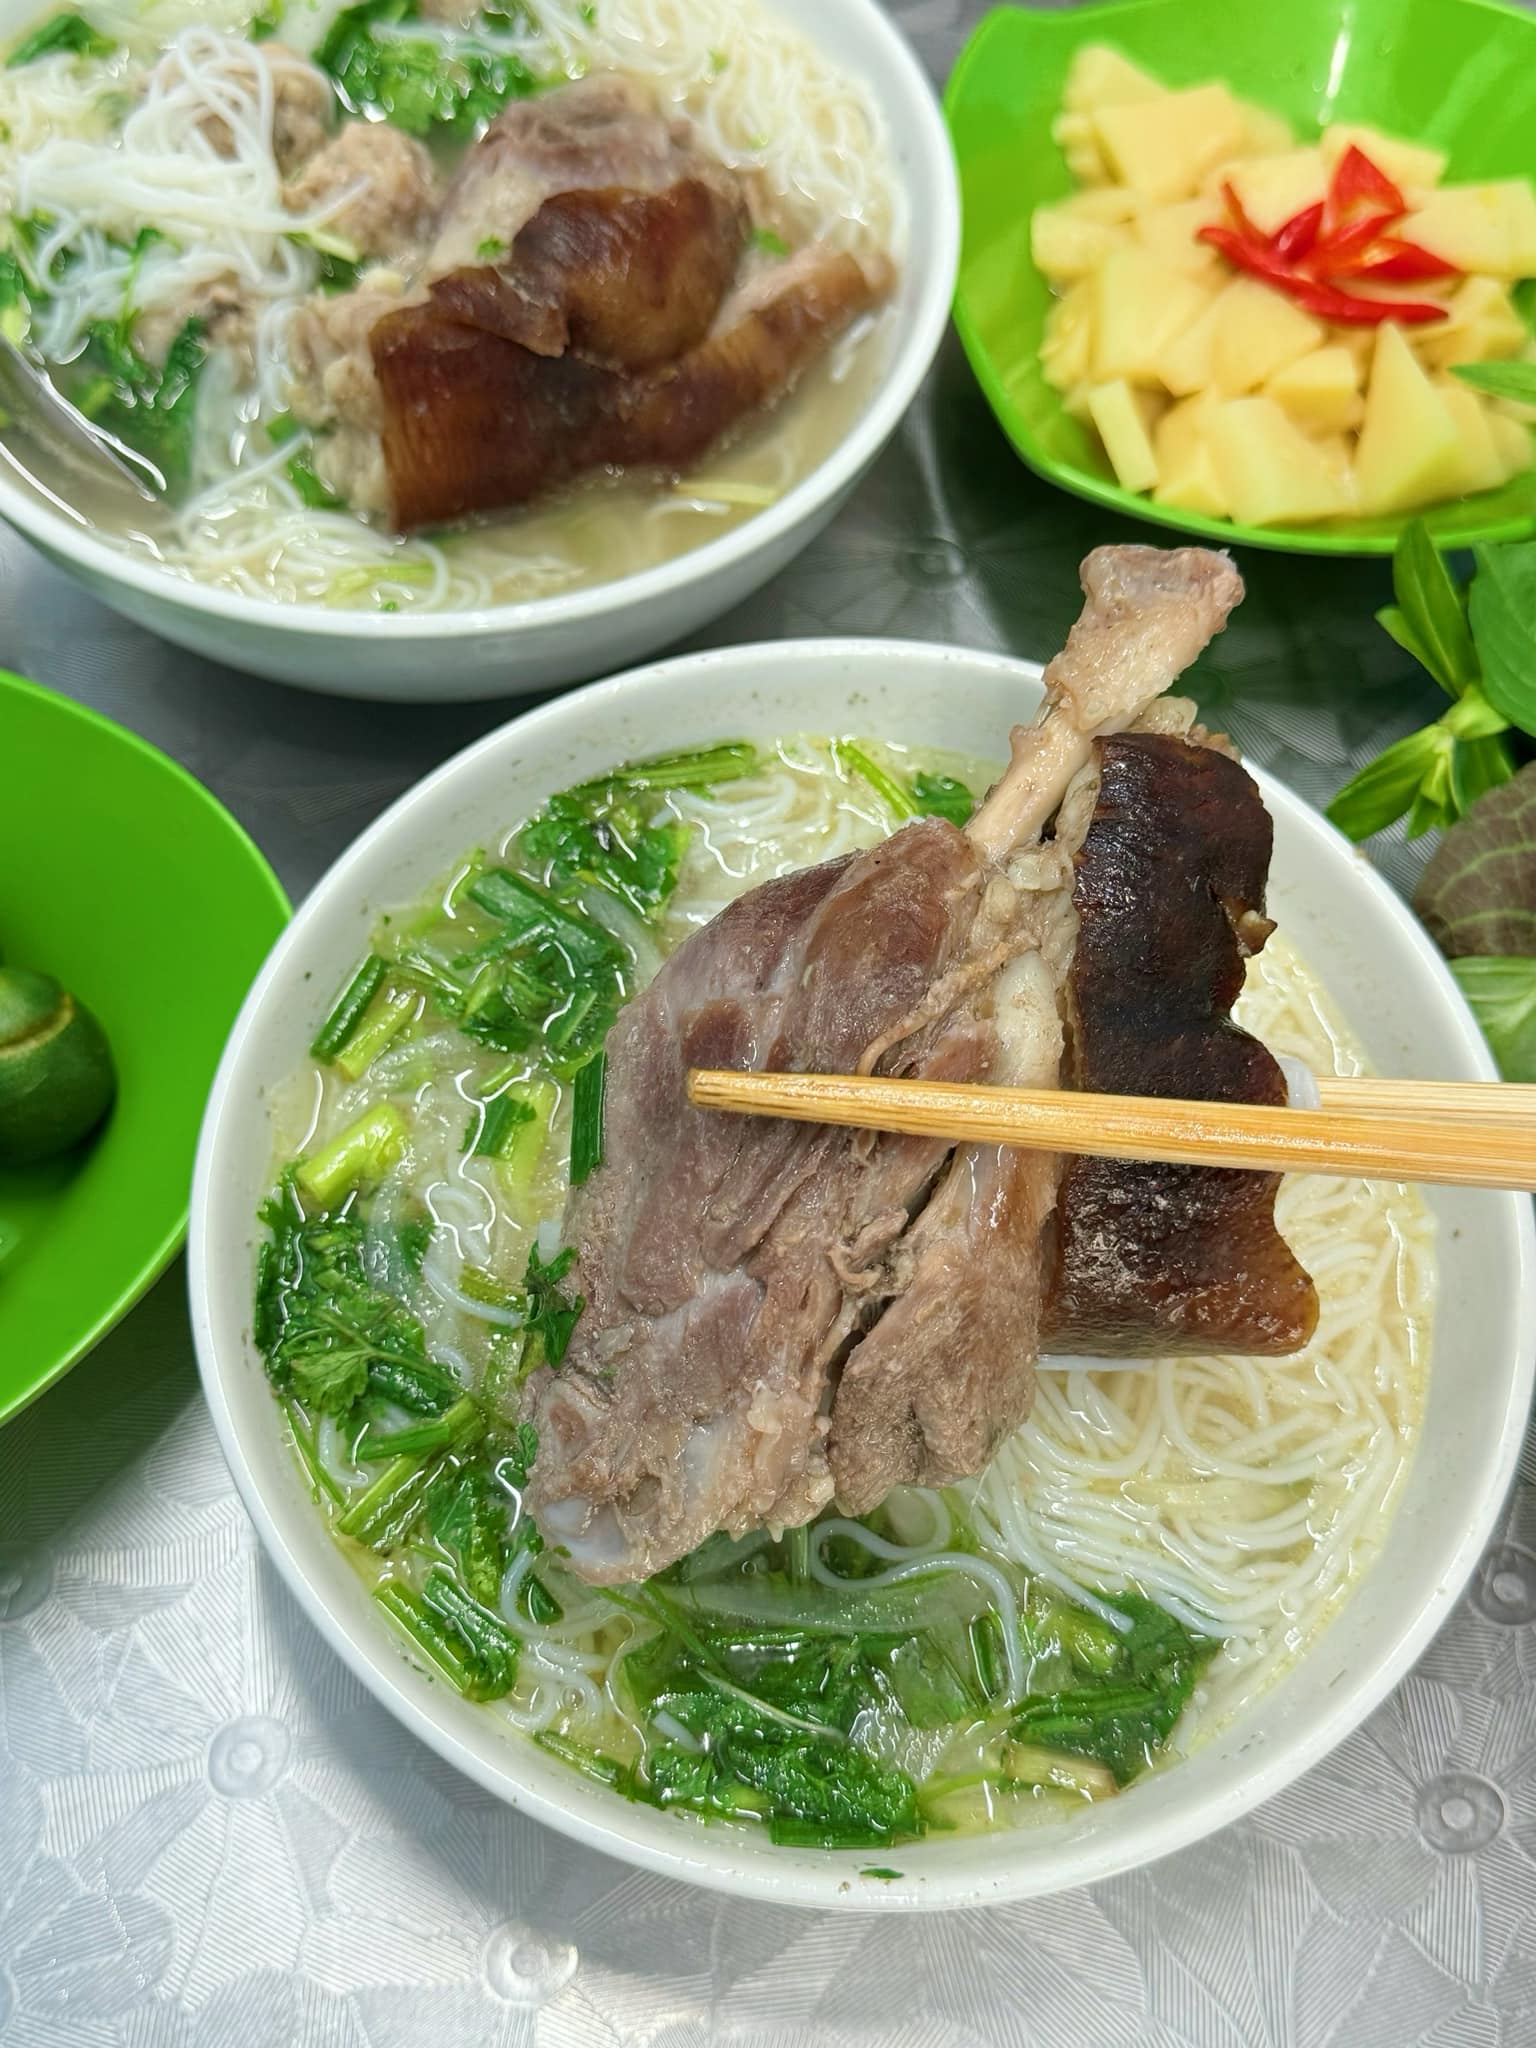 Bún chân giò tăm người sành ăn mới biết ở Nam Định